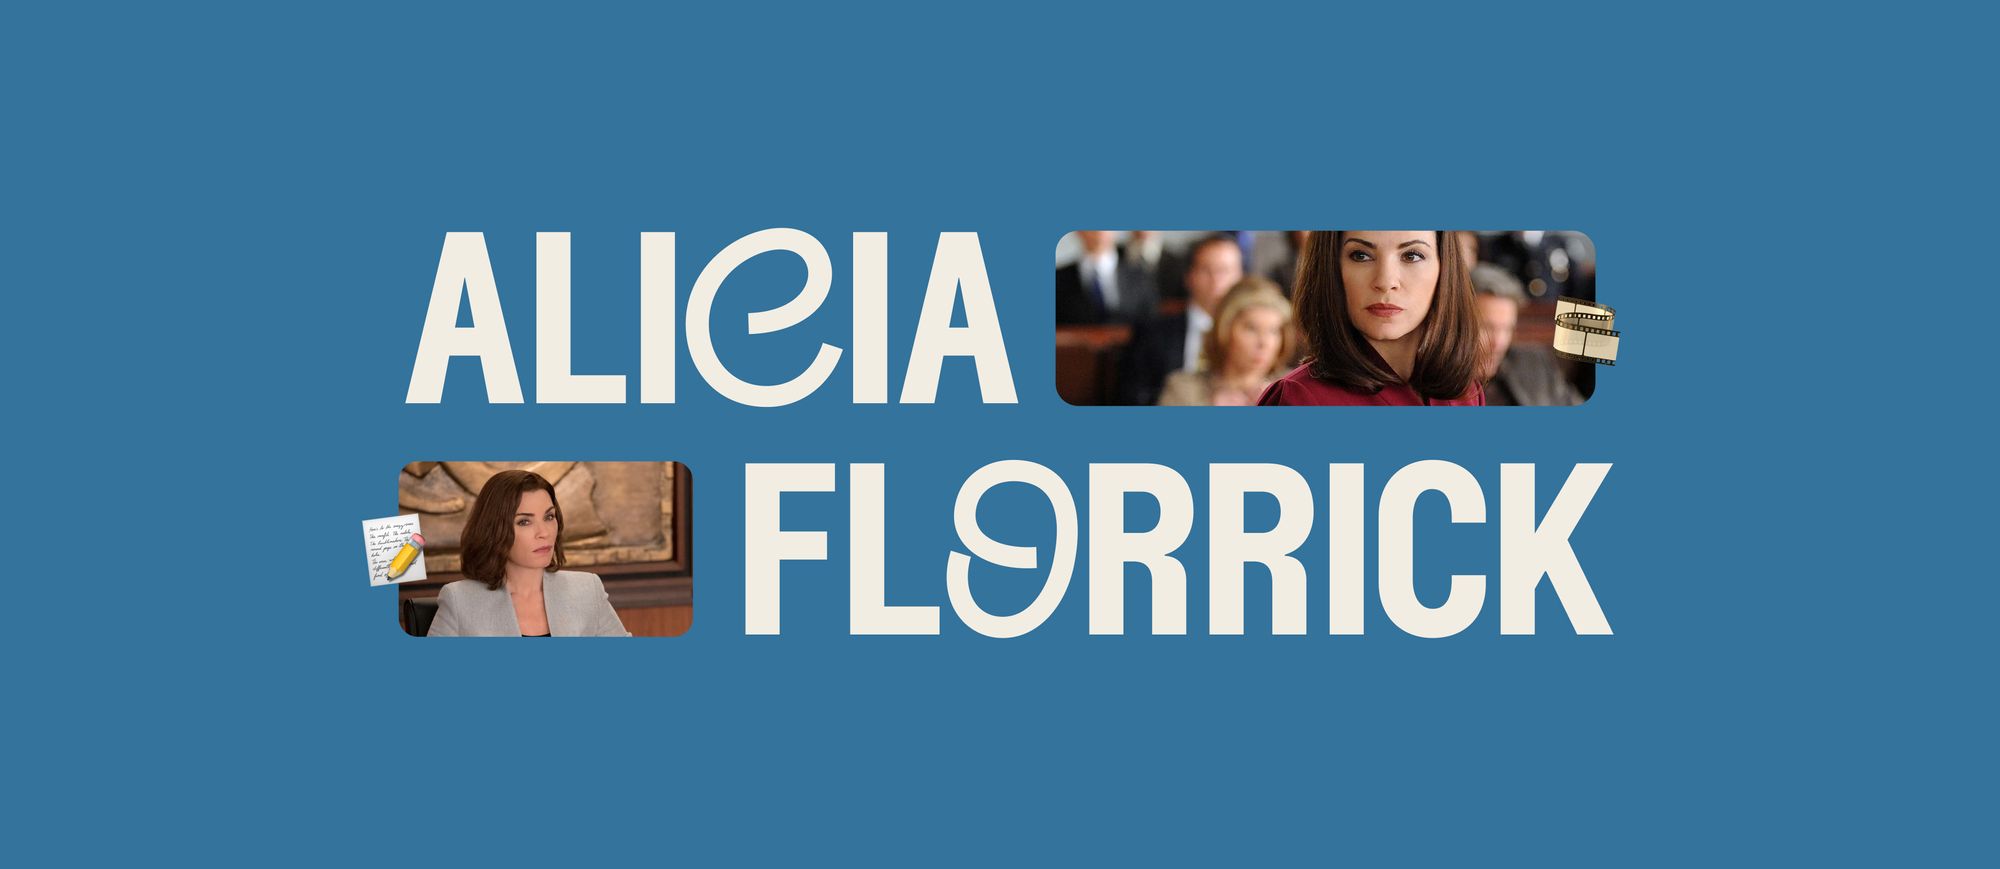 Alicia Florrick